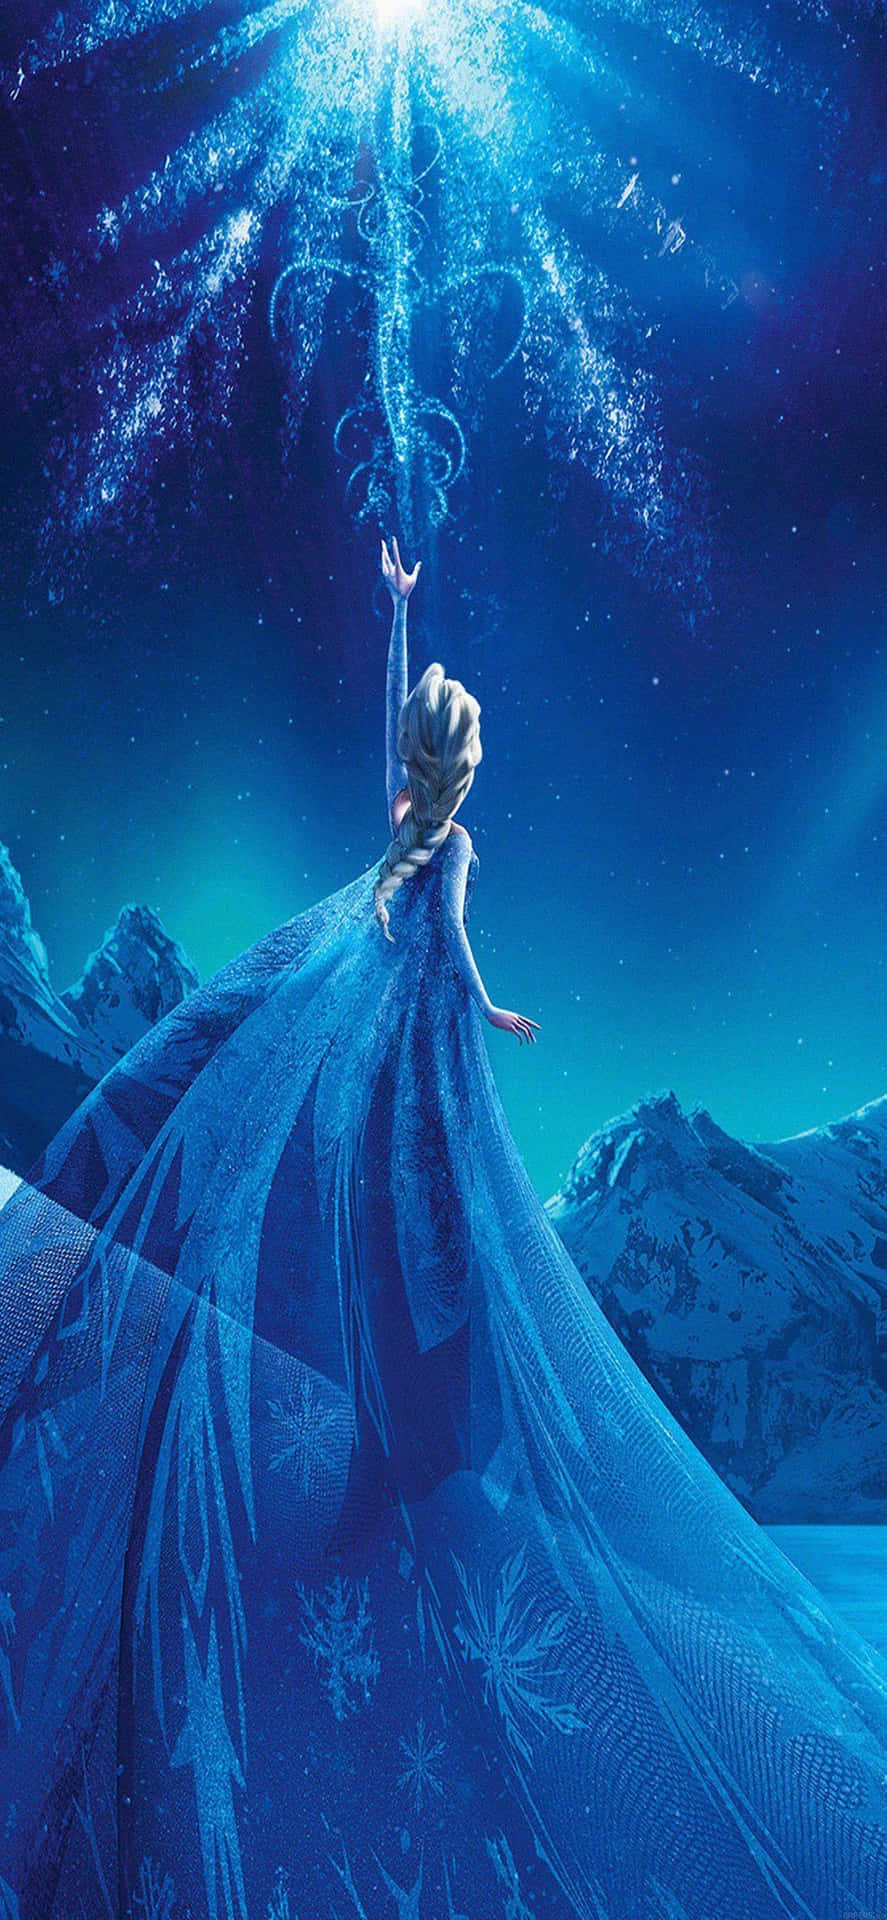 Iphone X Disney Background Frozen Elsa